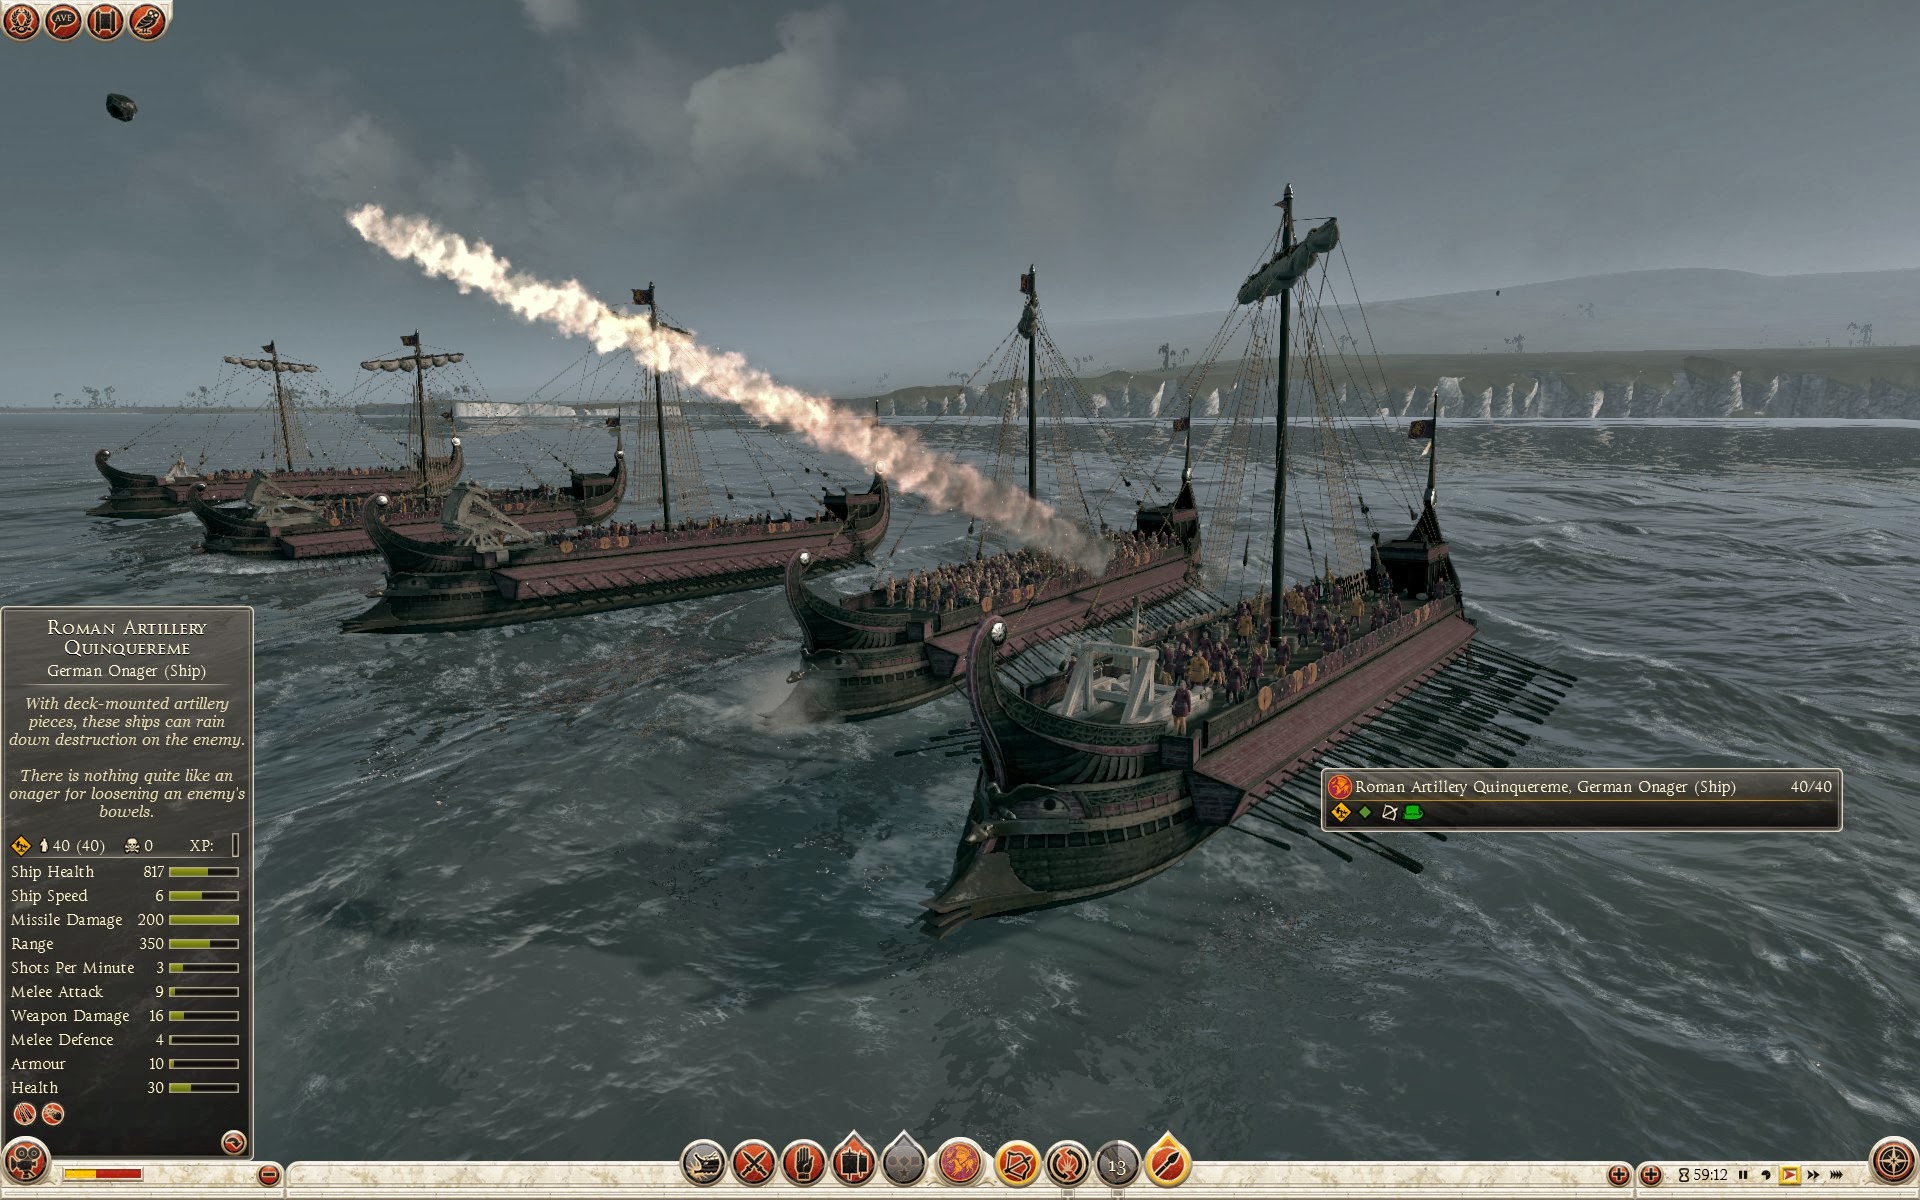 Quinquerreme romano de artillería - Onagro germánico (barco)